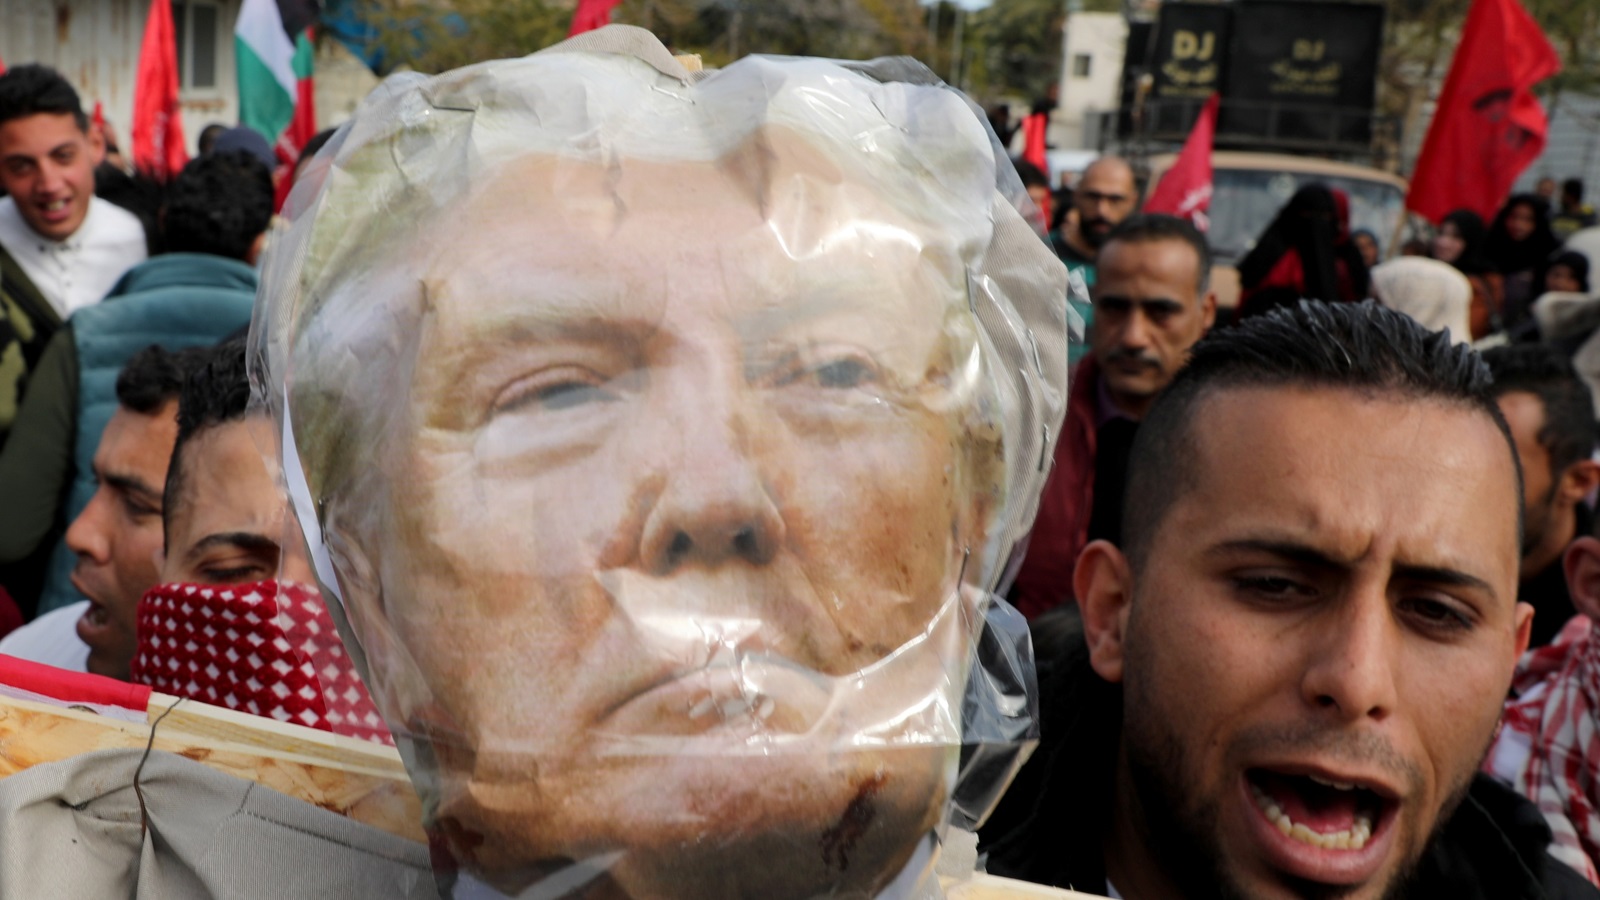 ‪متظاهرون في غزة يرفعون صورة ترامب قبل حرقها احتجاجا على خطته للسلام‬ متظاهرون في غزة يرفعون صورة ترامب قبل حرقها احتجاجا على خطته للسلام (رويترز)